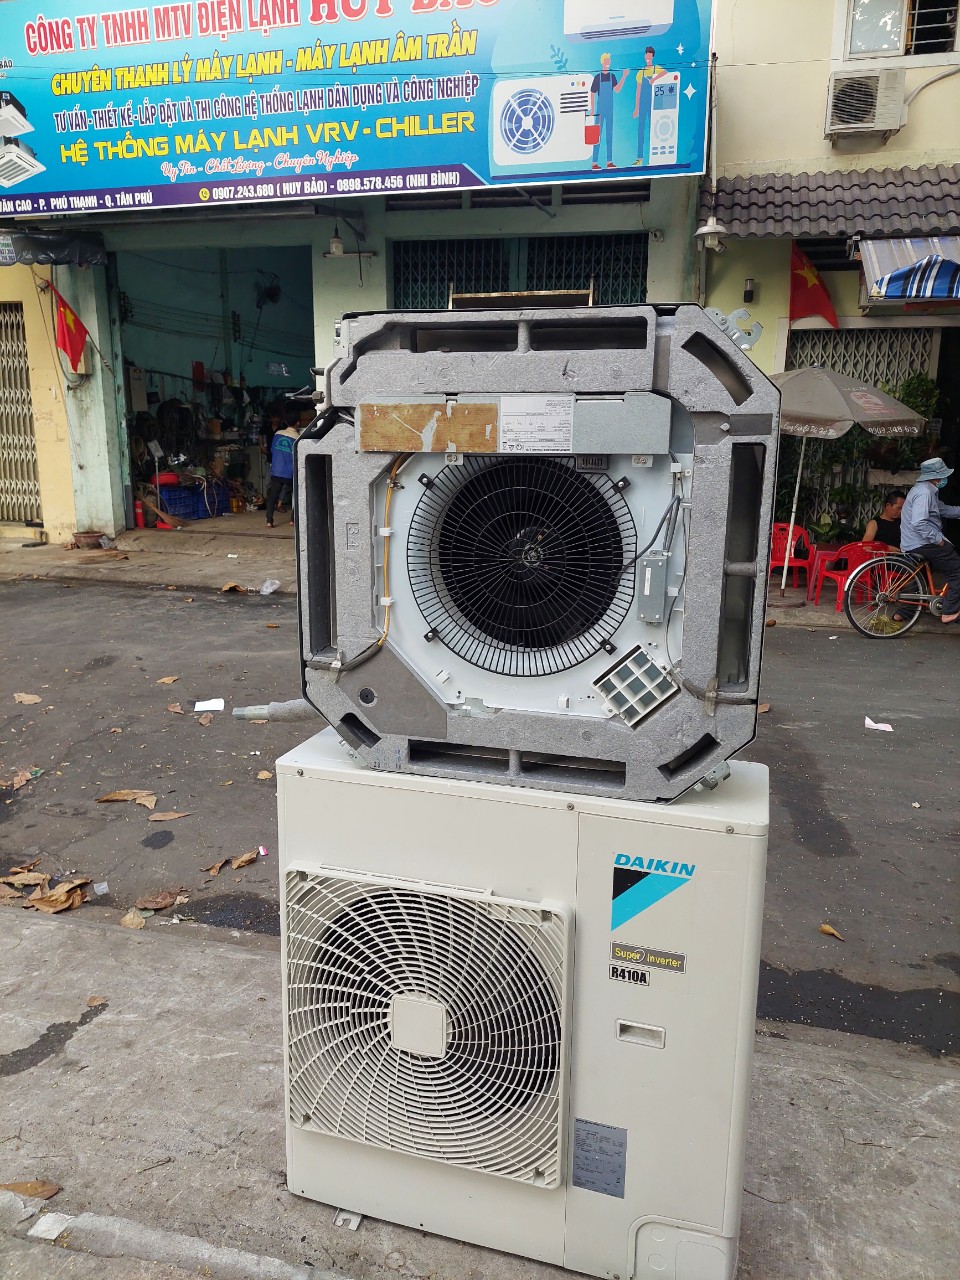 Thu mua máy lạnh đã qua sử dụng tại các quận trên địa bàn TPHCM | Thu mua máy lạnh cũ nhà xưởng TpHCM